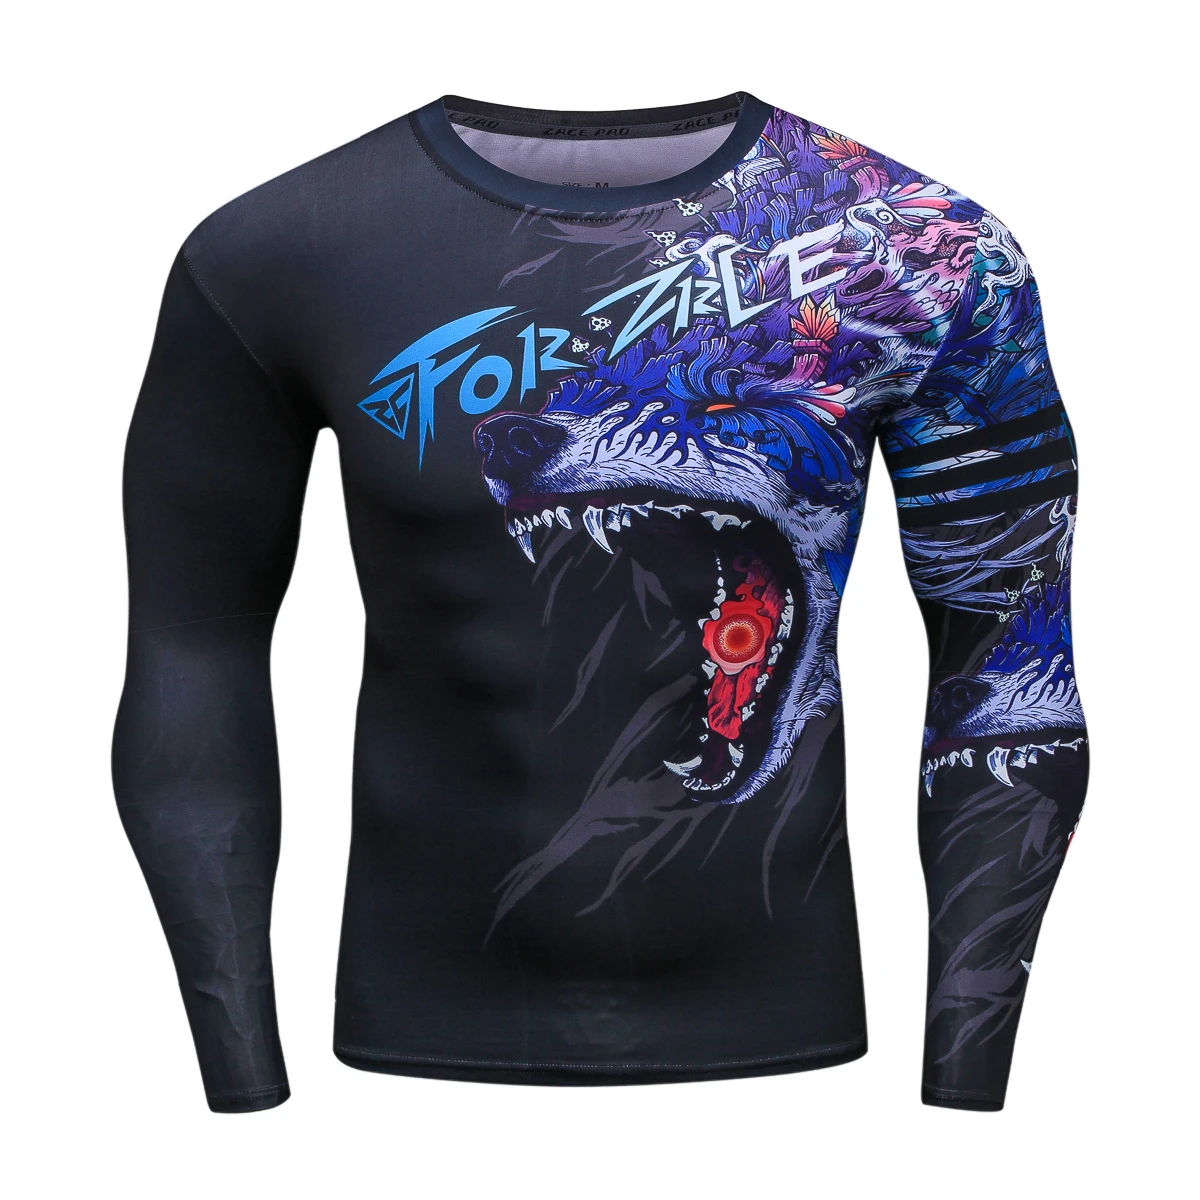 Спортивная мужская рубашка с 3D драконом, одежда для спортзала, S-2XL, фитнеса, для мужчин, Кроссфит размера плюс, Майки для бодибилдинга, zrce, компрессионная рубашка